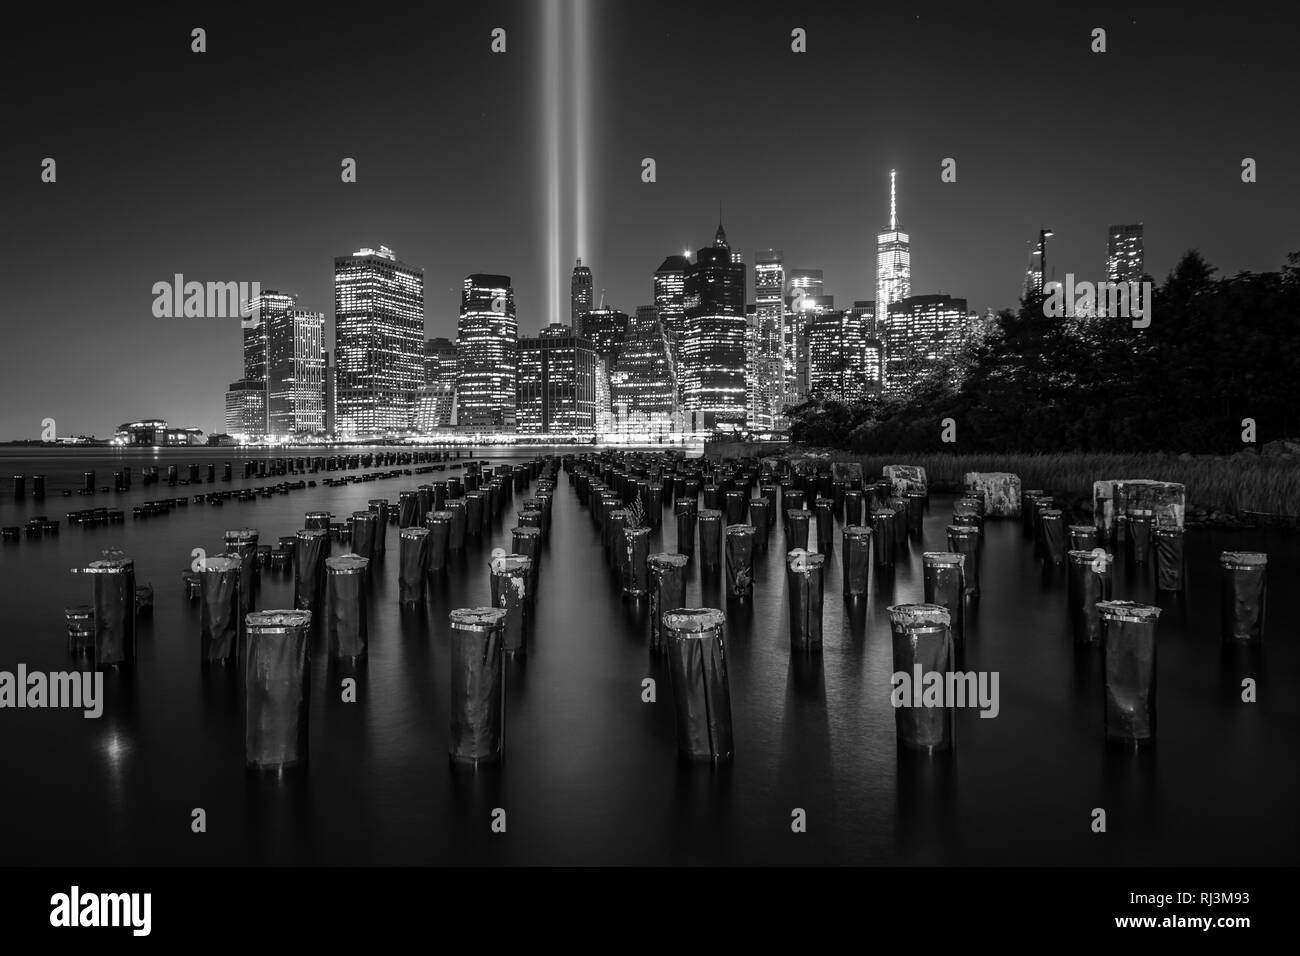 Pier pieux et l'hommage rendu à la lumière sur l'horizon de Manhattan de nuit, vu du pont de Brooklyn Park, à Brooklyn, New York. Banque D'Images